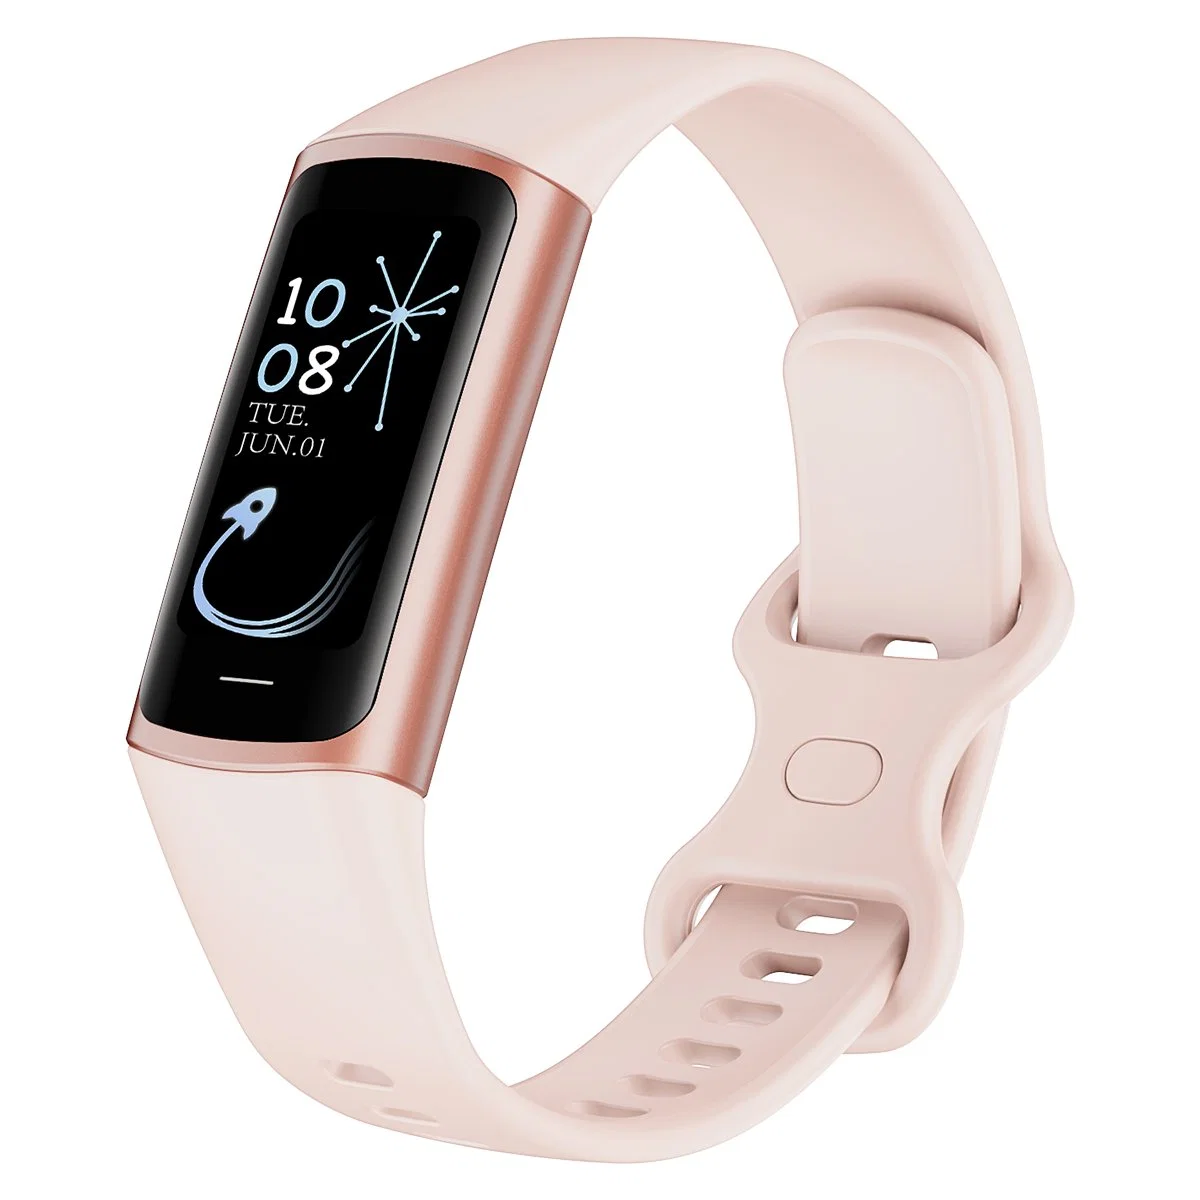 Nouveau bracelet intelligent avec écran couleur Amoled de 1,1 pouce, suivi de fitness, fréquence cardiaque, montre de bracelet sportif intelligente BT.